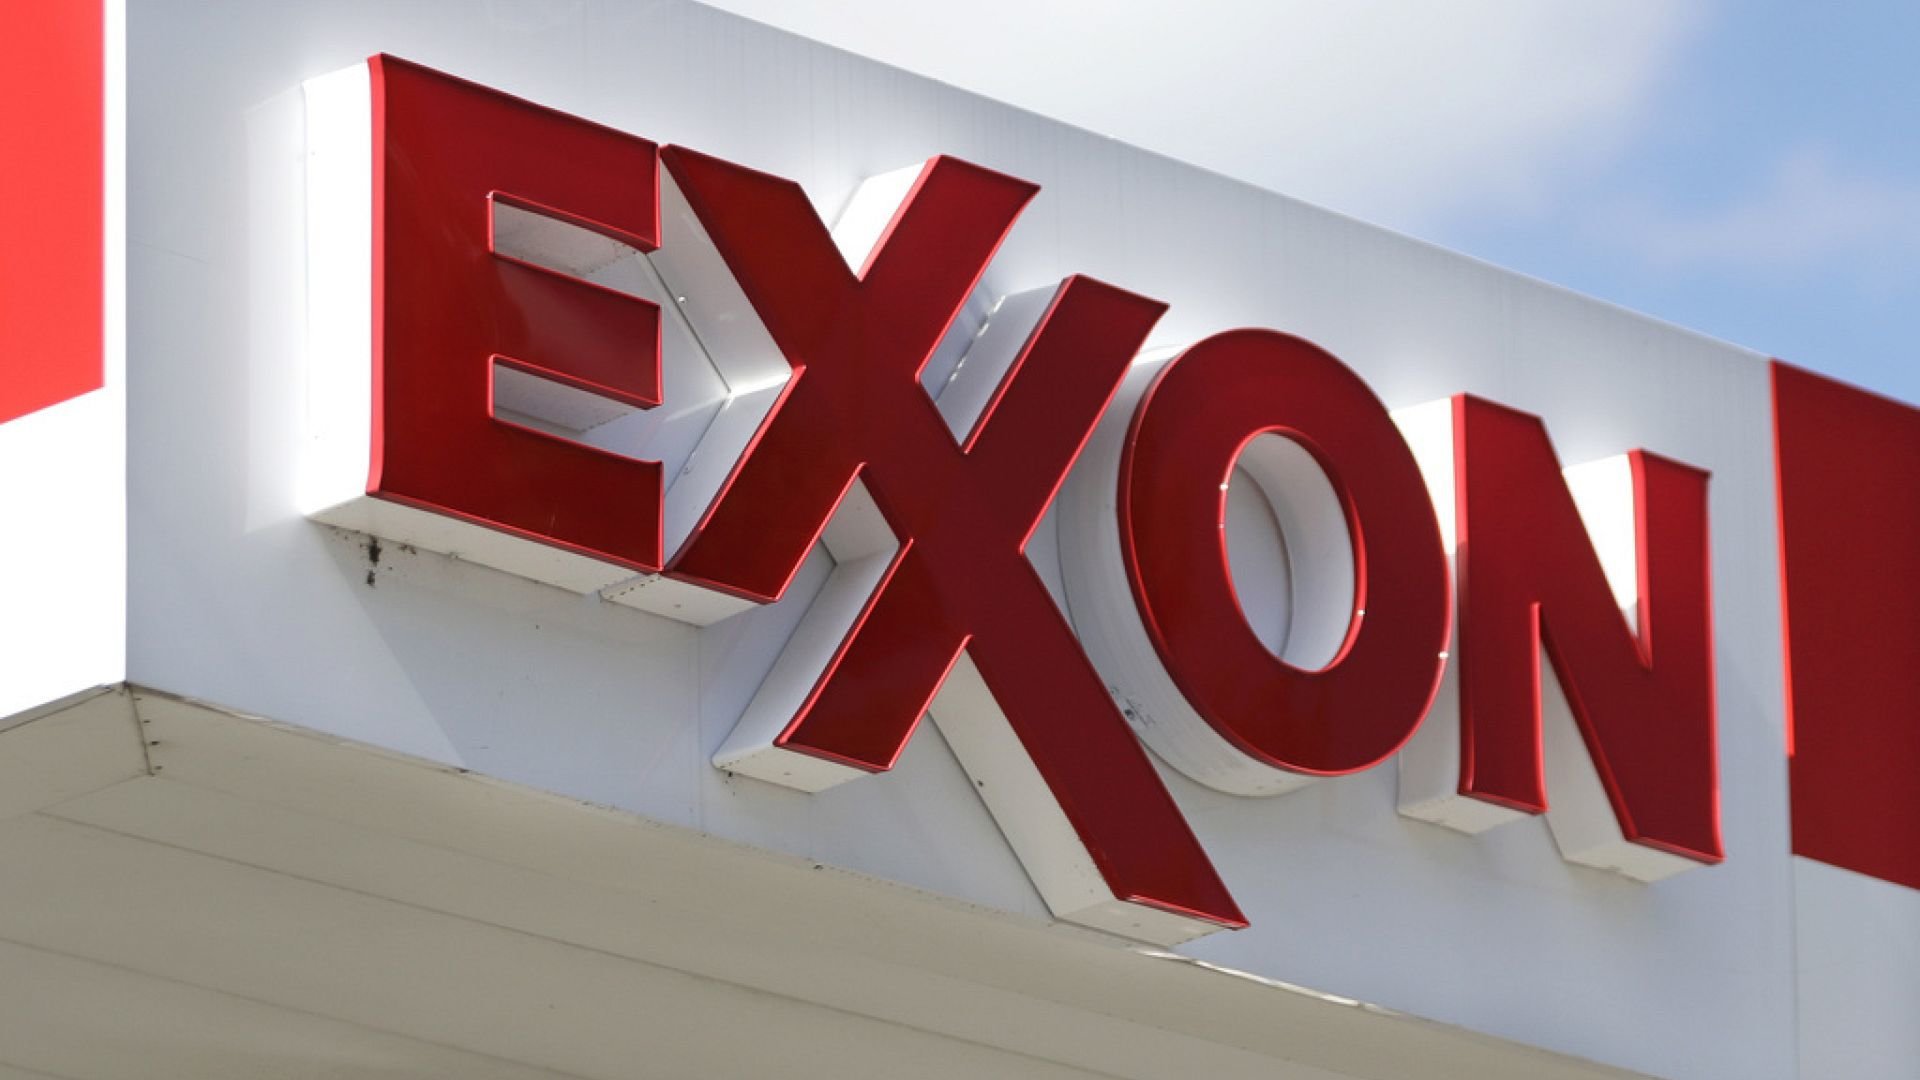 Turcia caută diversificarea energiei cu ExxonMobil: acord de 1,1 miliarde de dolari pentru gaze naturale lichefiate în contextul îmbunătățirii relațiilor dintre SUA și Turcia și al vulnerabilității Rusiei